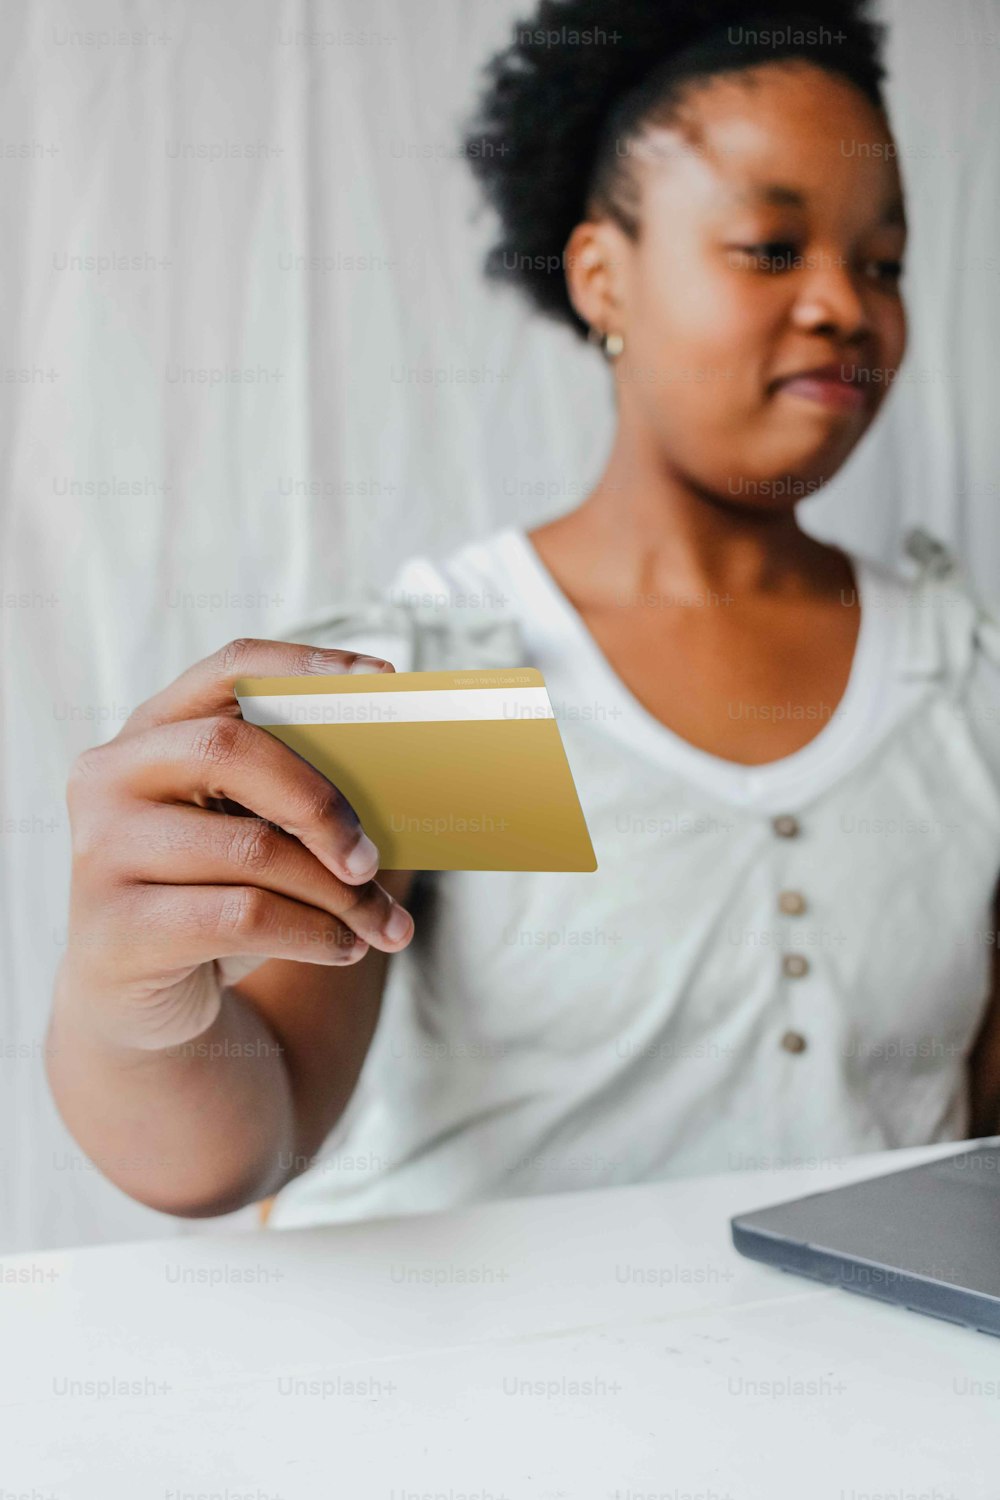 Eine Frau sitzt an einem Tisch und hält eine Kreditkarte in der Hand